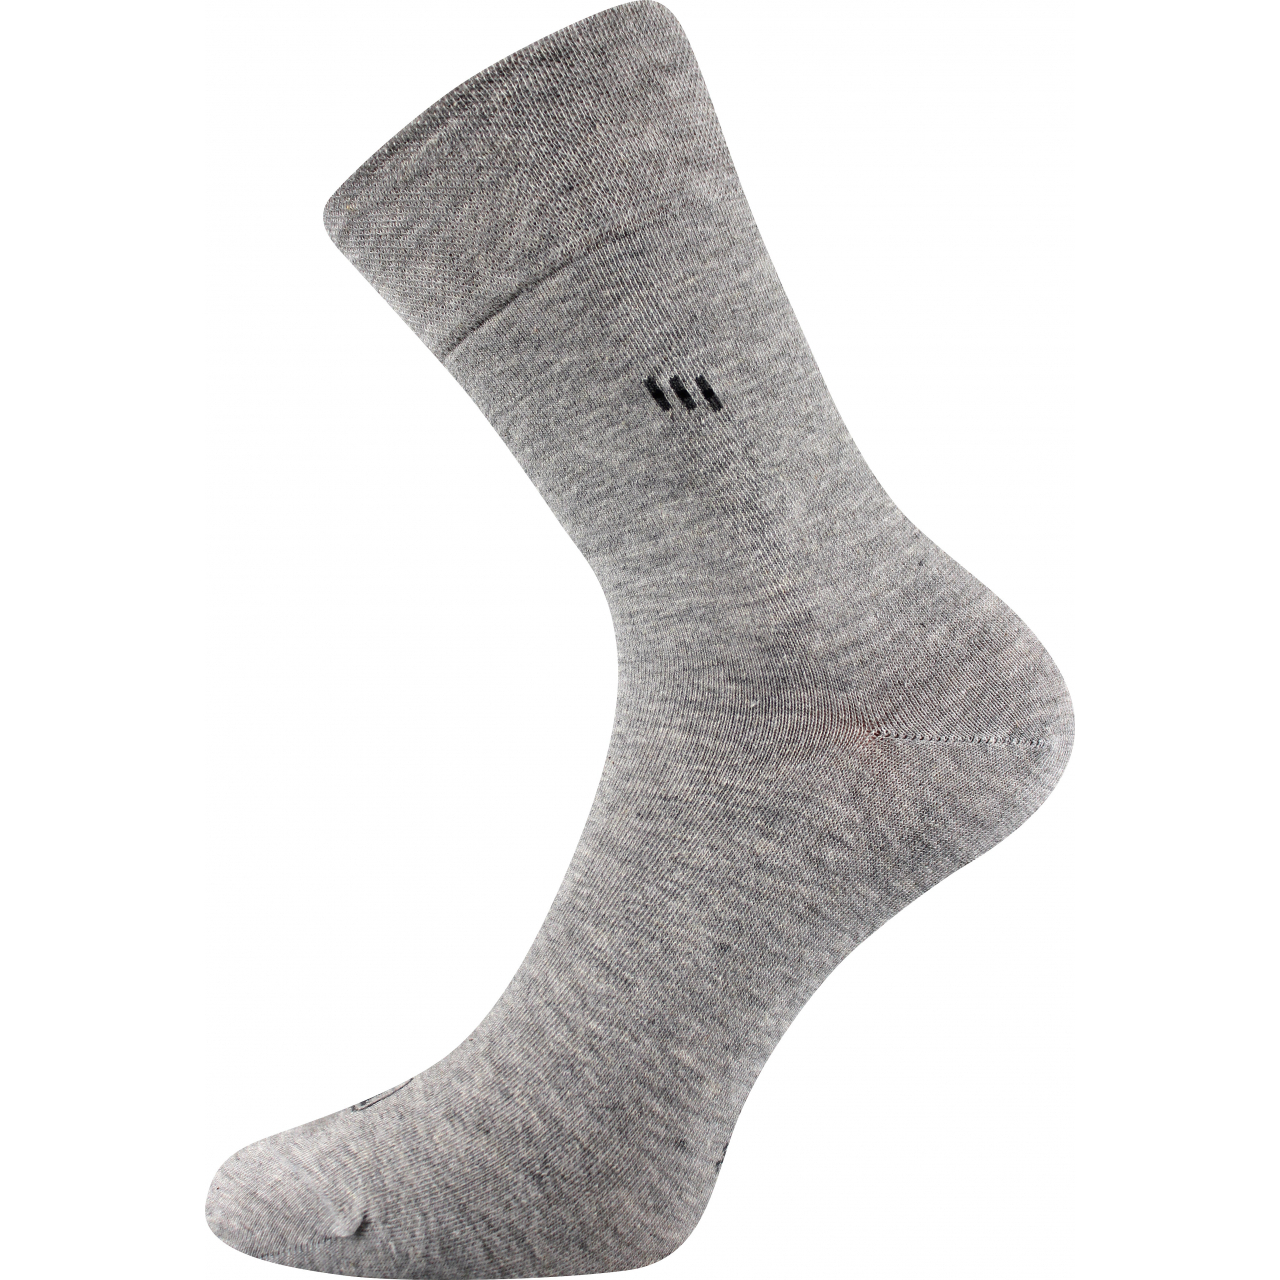 Ponožky pánské společenské Lonka Dipool - světle šedé, 47-50